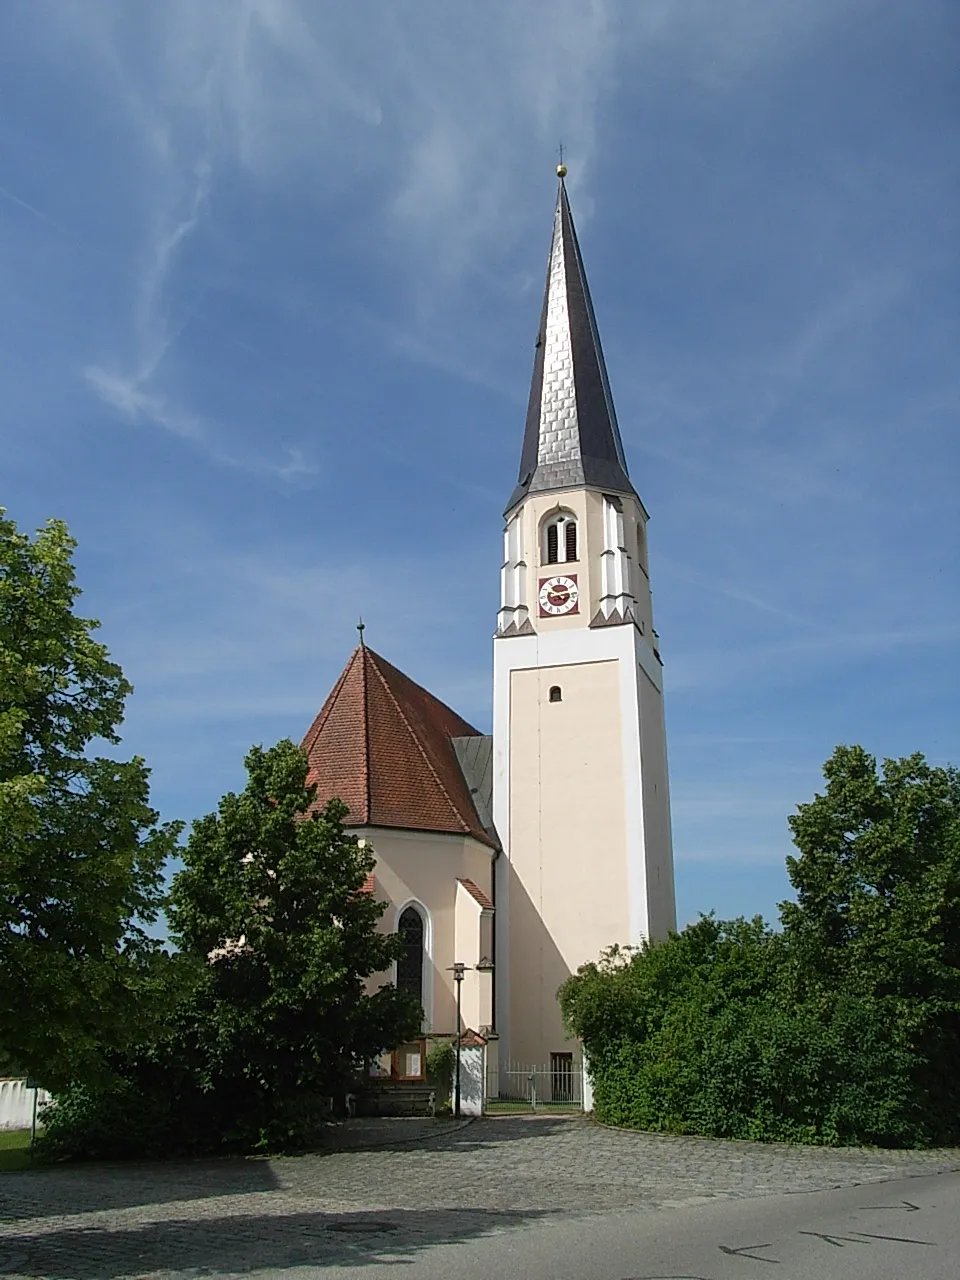 Image of Dietersburg